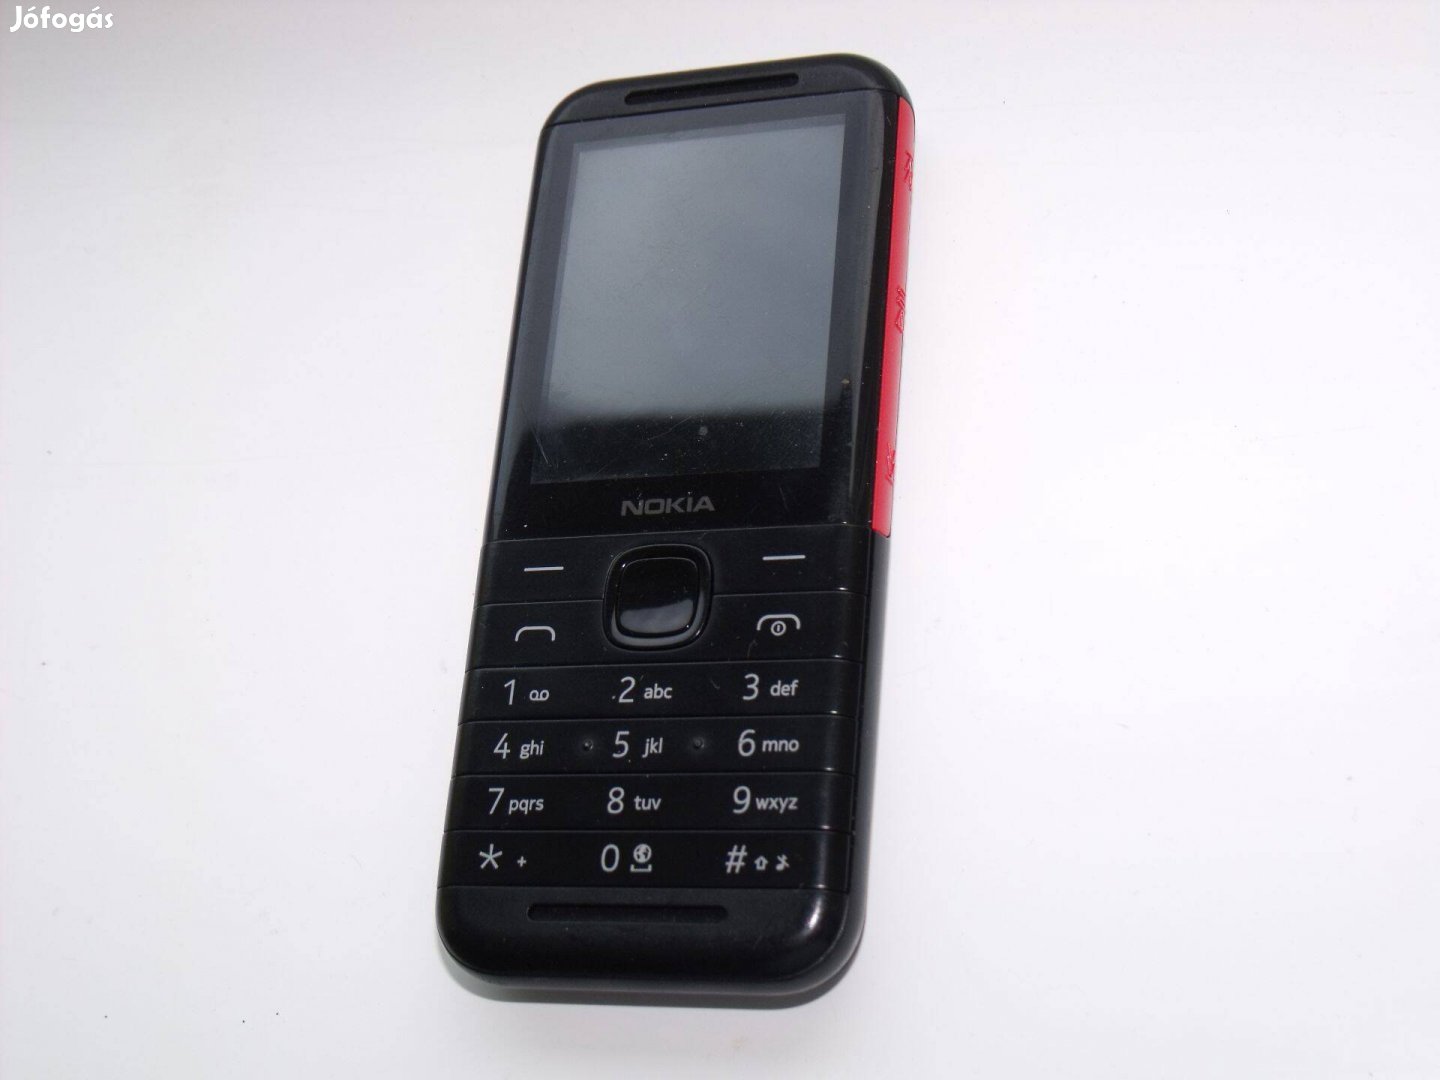 Nokia 5310 mobiltelefon, tartozékokkal. Legolcsóbb